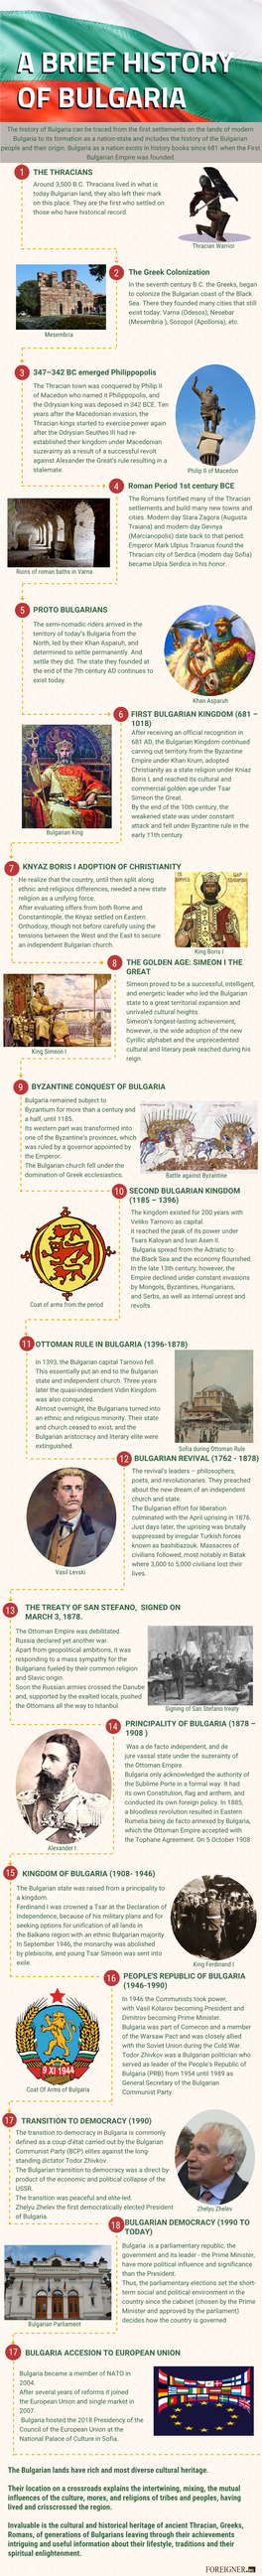 Ottoman Rule in Bulgaria (1396-1878)